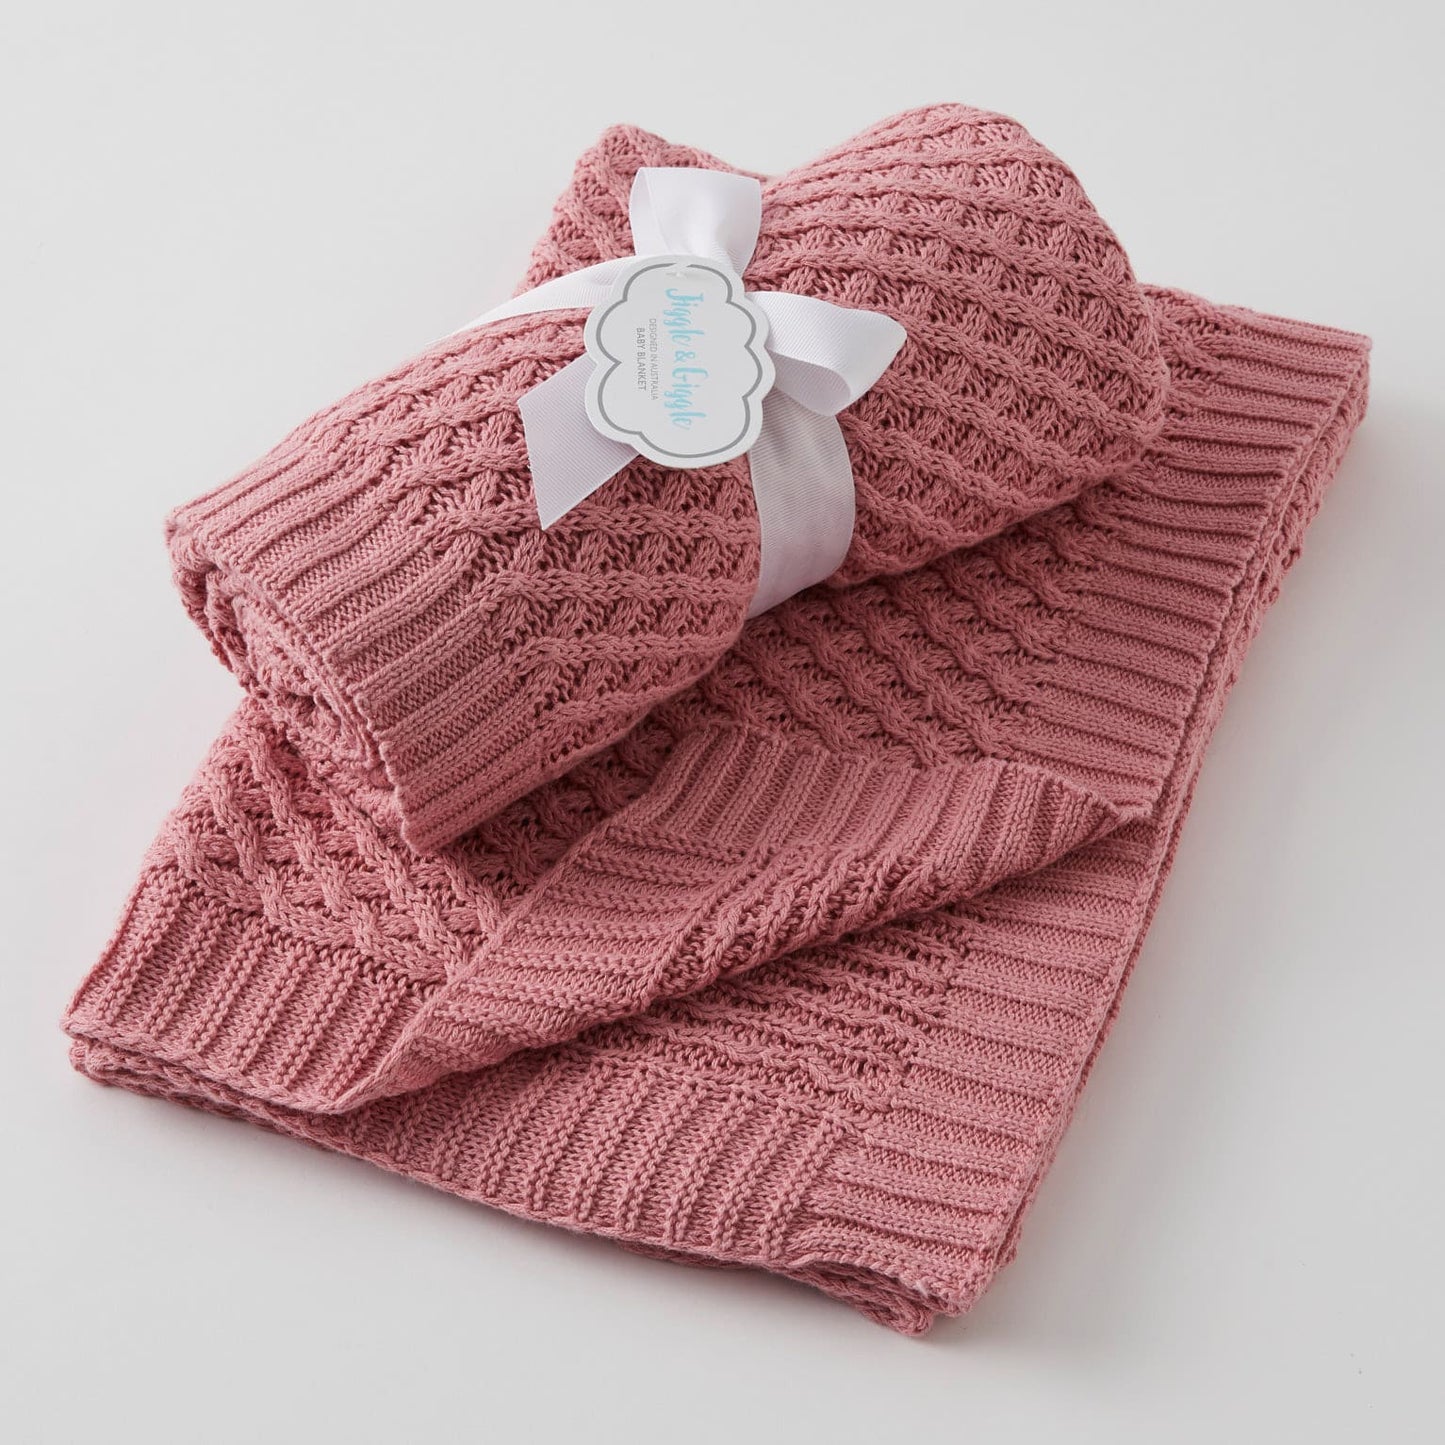 Basket Weave Knit Blanket - Rose